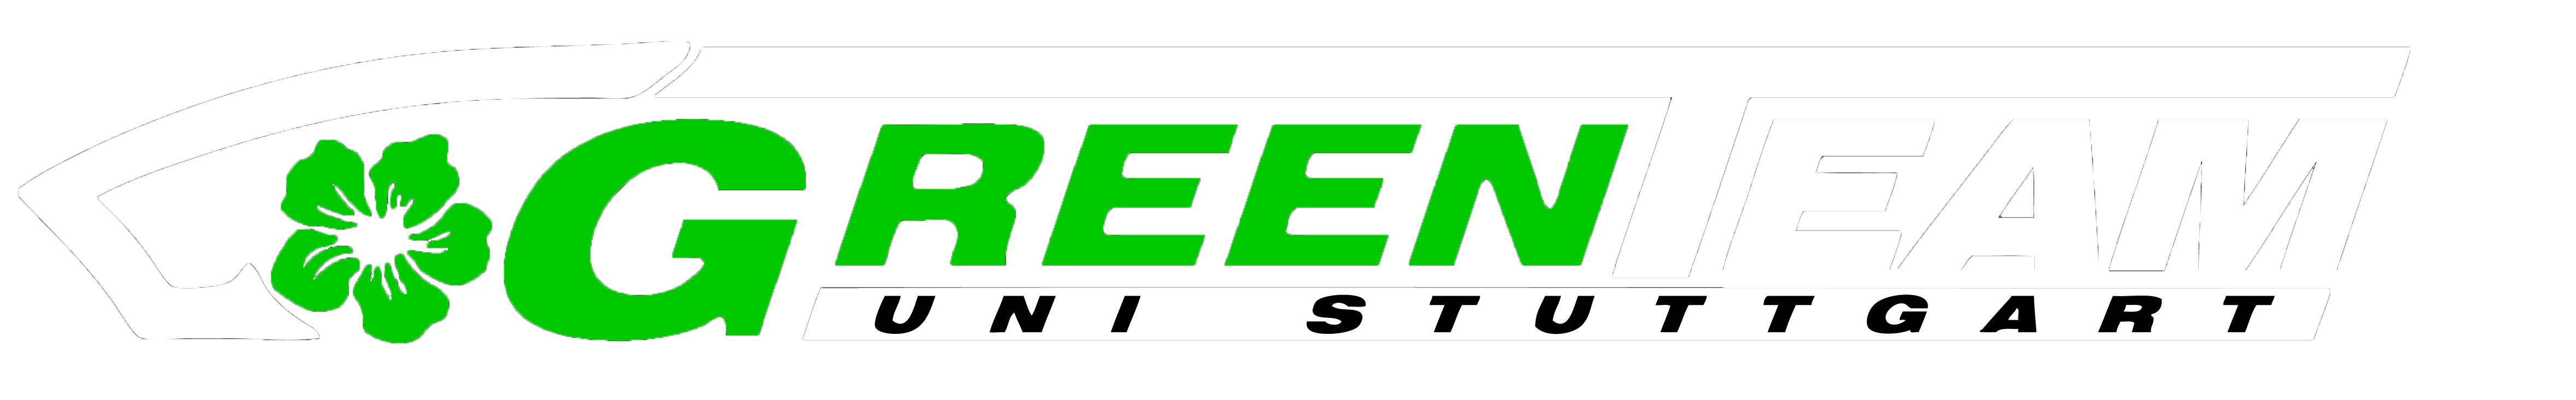 GreenTeam – Season Review E0711‑6 – 2014/2015